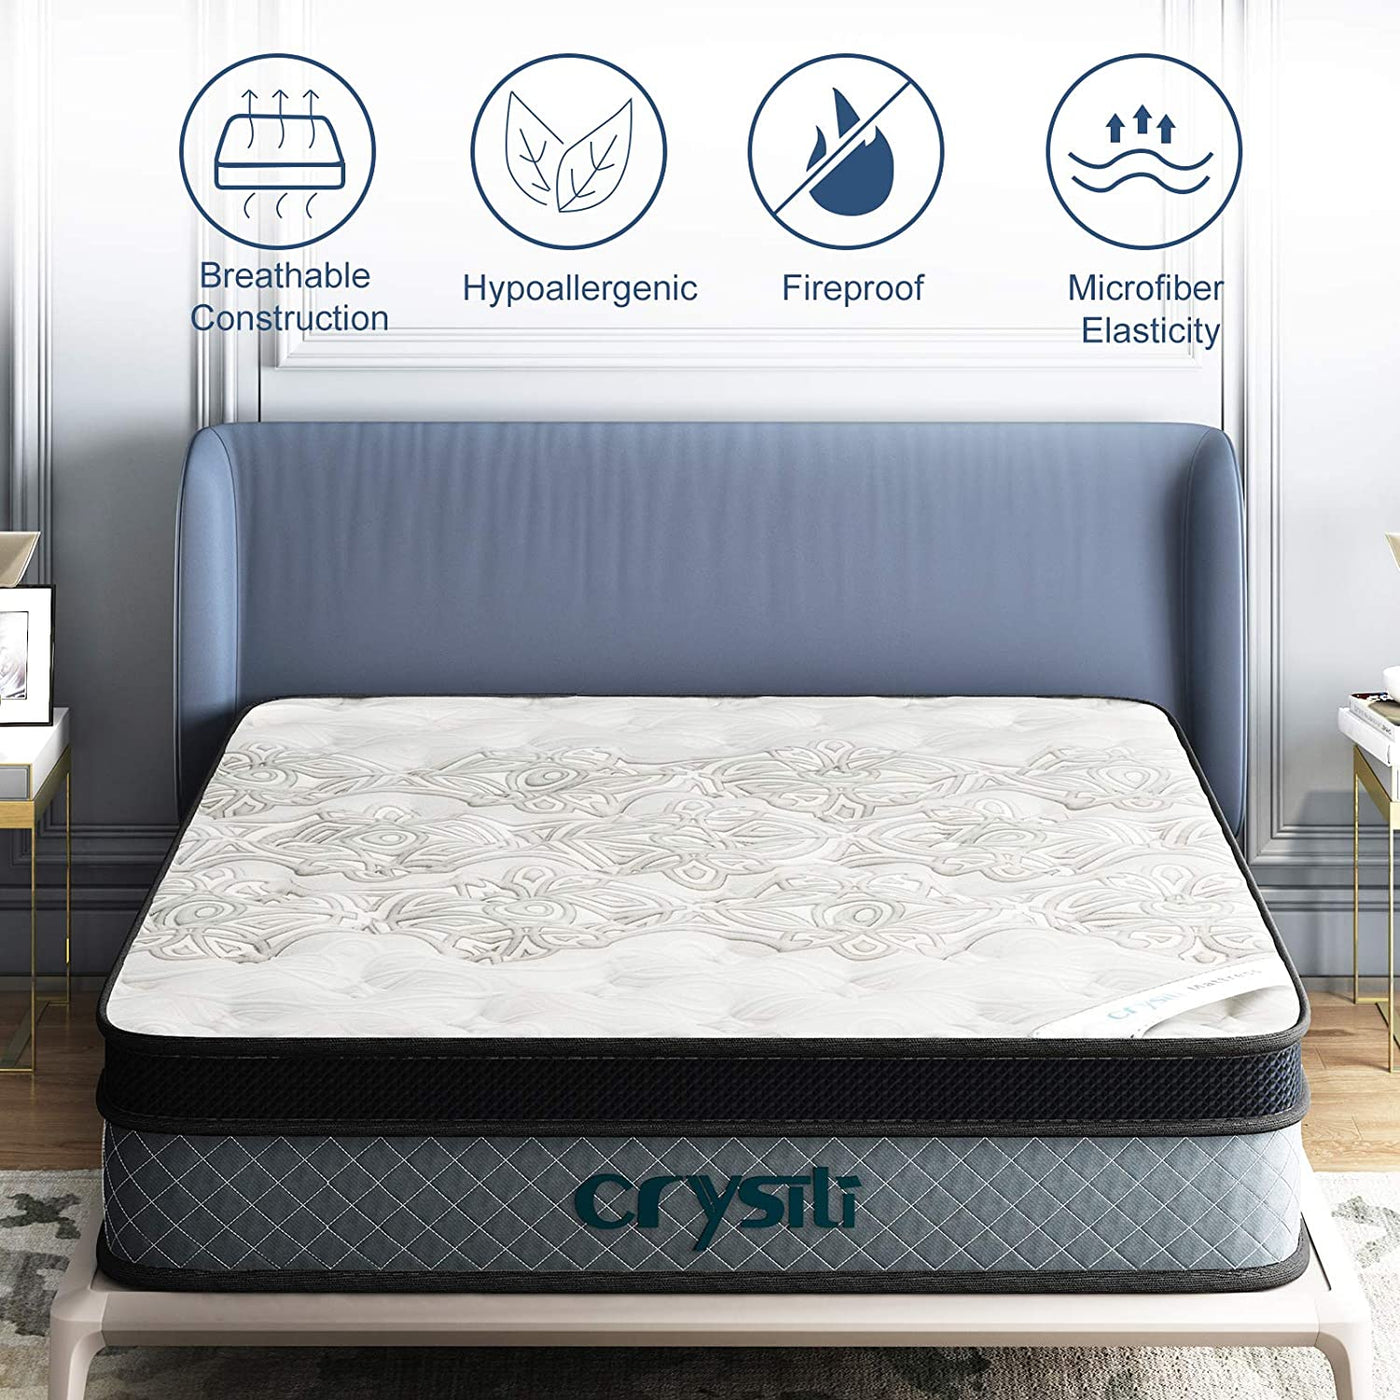 Crystli |12-inch Hybrid Mattress